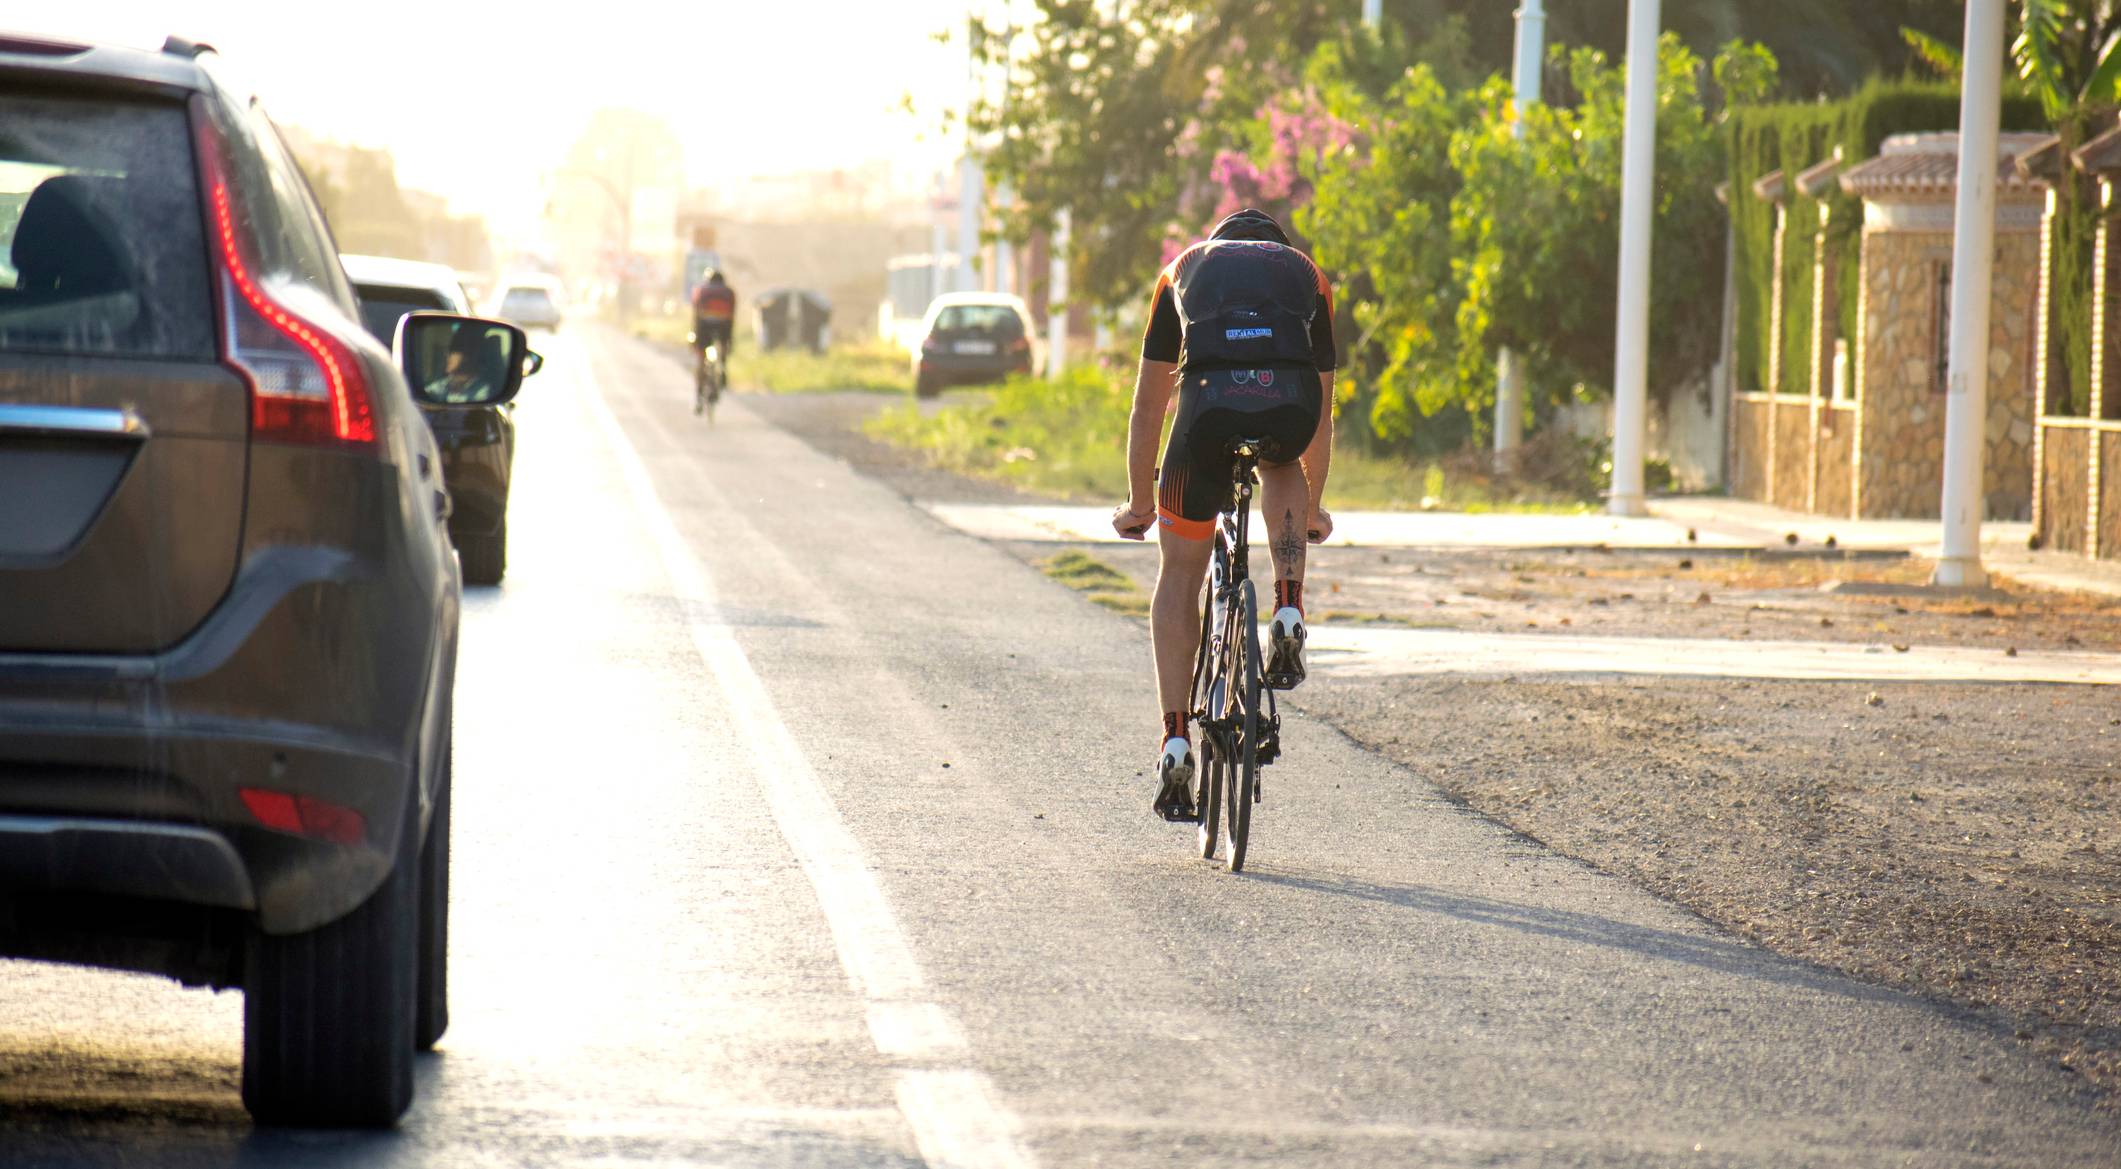 Ciclista circulando por la carretera | Foto: Pexels.com